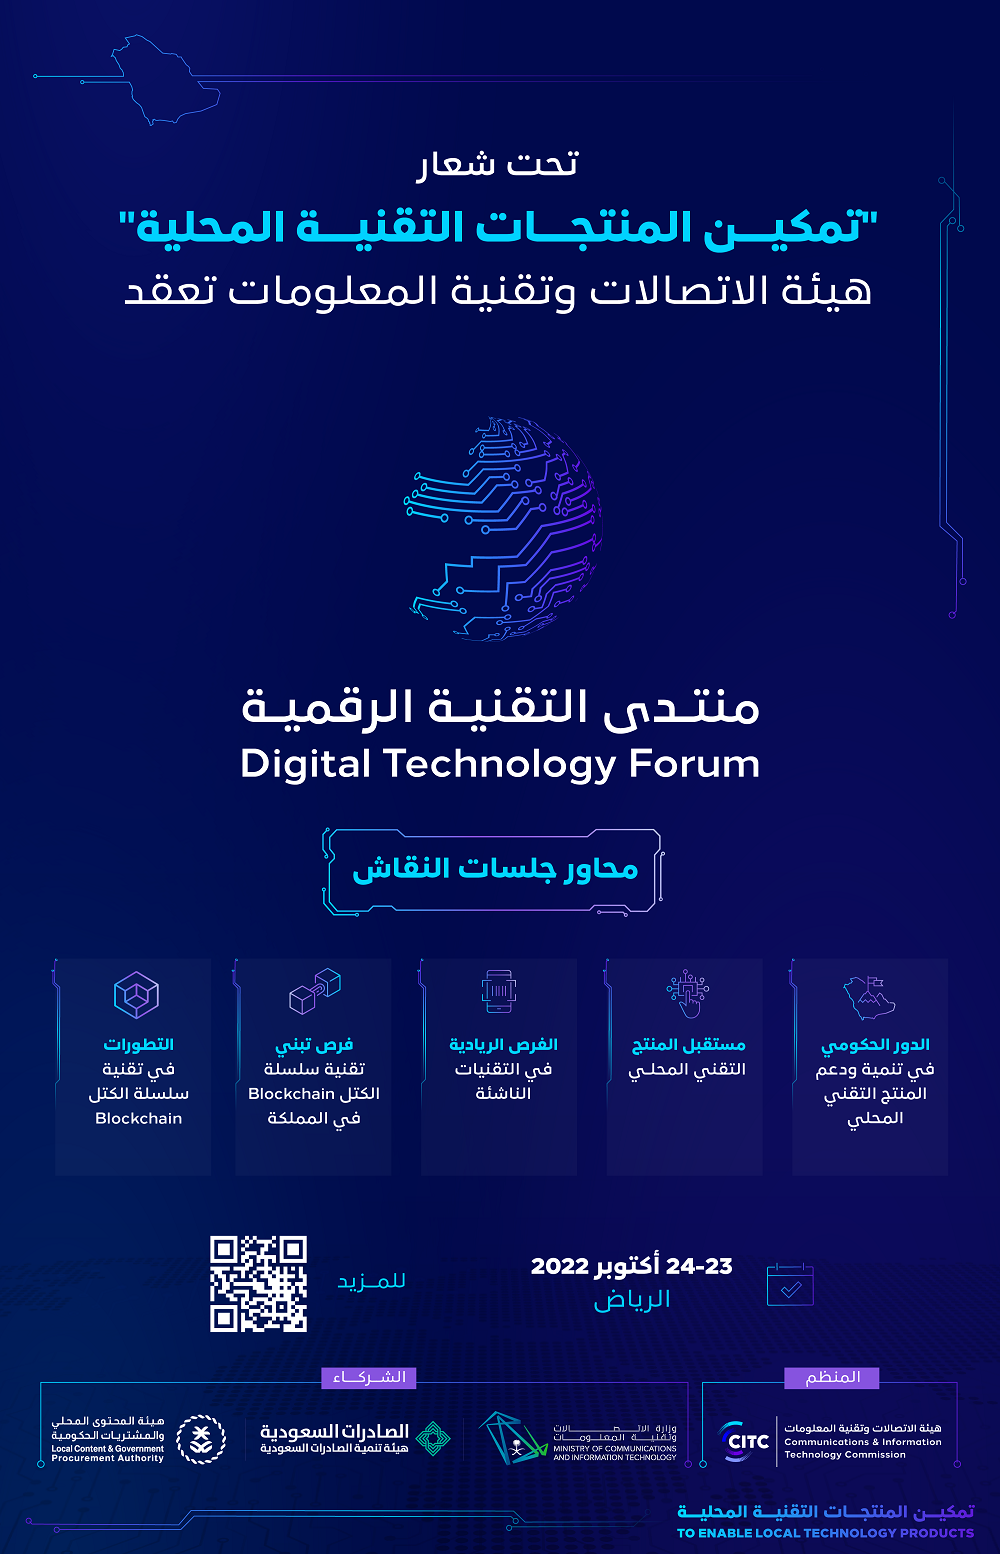 هيئة الاتصالات السعودية تعقد منتدى التقنية الرقمية 2022 يوم غد الأحد